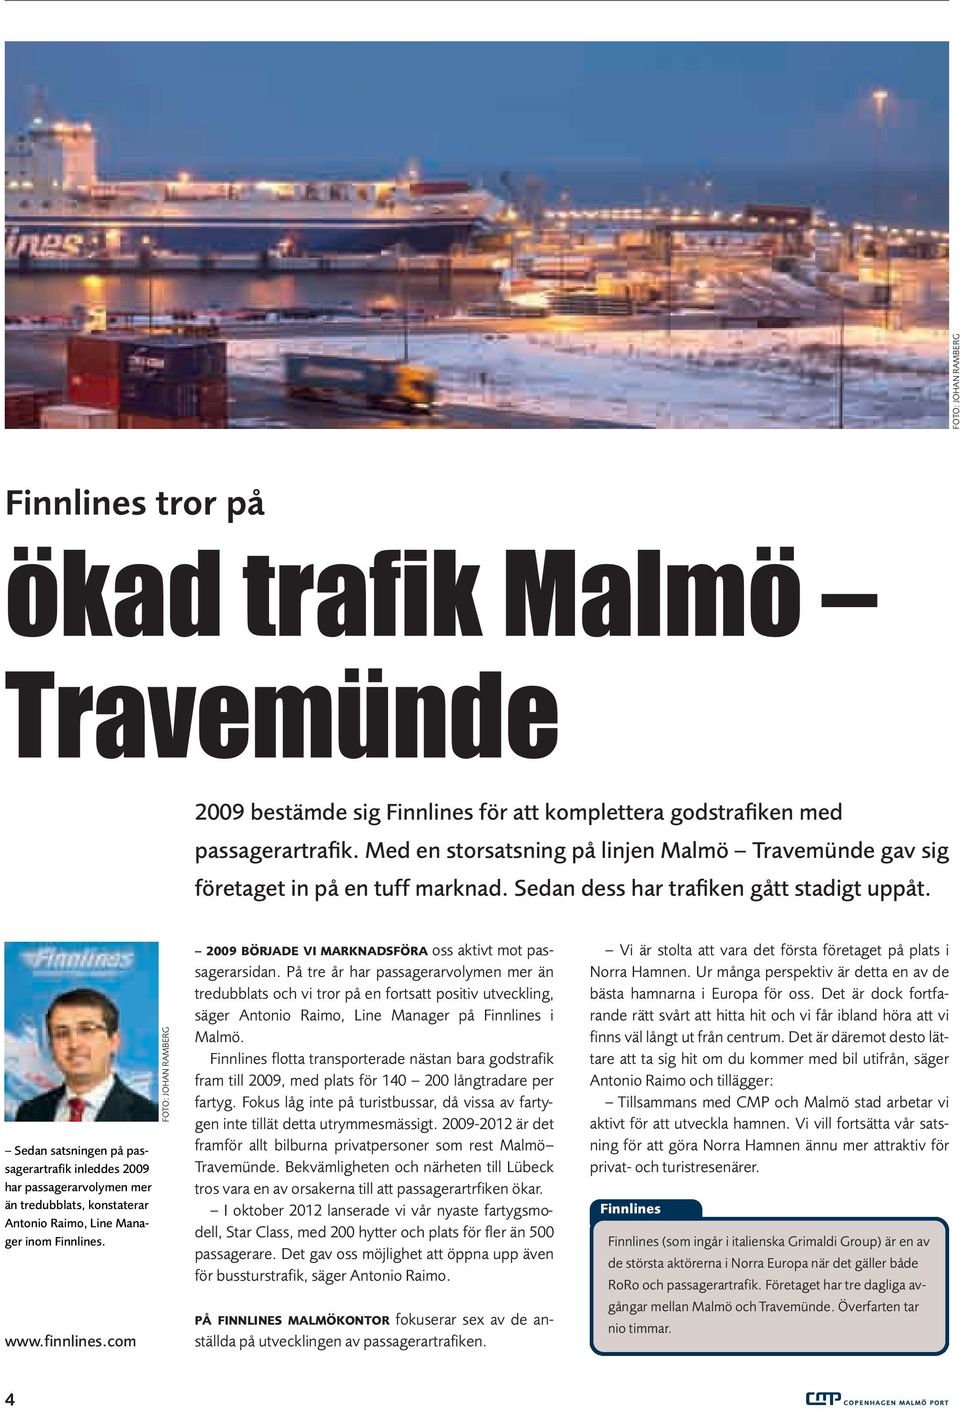 Sedan satsningen på passagerartrafik inleddes 2009 har passagerarvolymen mer än tredubblats, konstaterar Antonio Raimo, Line Manager inom Finnlines. www.finnlines.